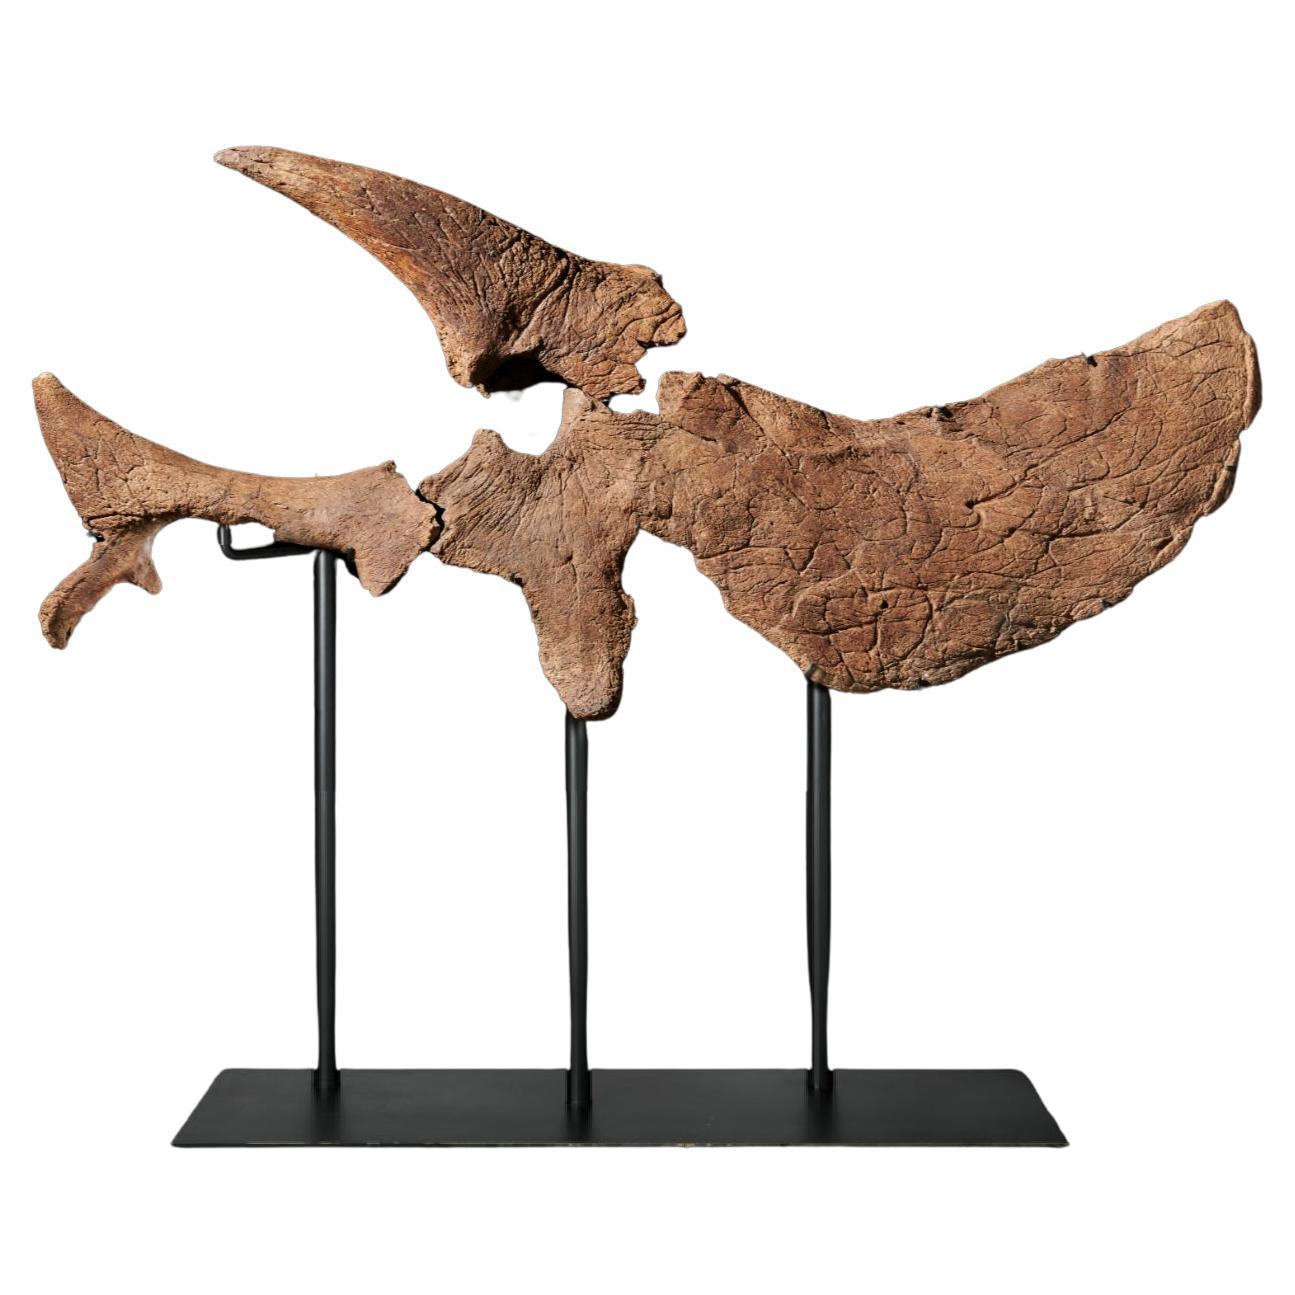 Ein Teilschädel eines ausgewachsenen Triceratops prorsus aus dem Maastrichtium, der späten Kreidezeit (vor 68-65 Millionen Jahren). Es ist dreiteilig und hat ein beeindruckend großes Nasen- und ein gewölbtes Stirnhorn (90,17 cm lang) sowie eine